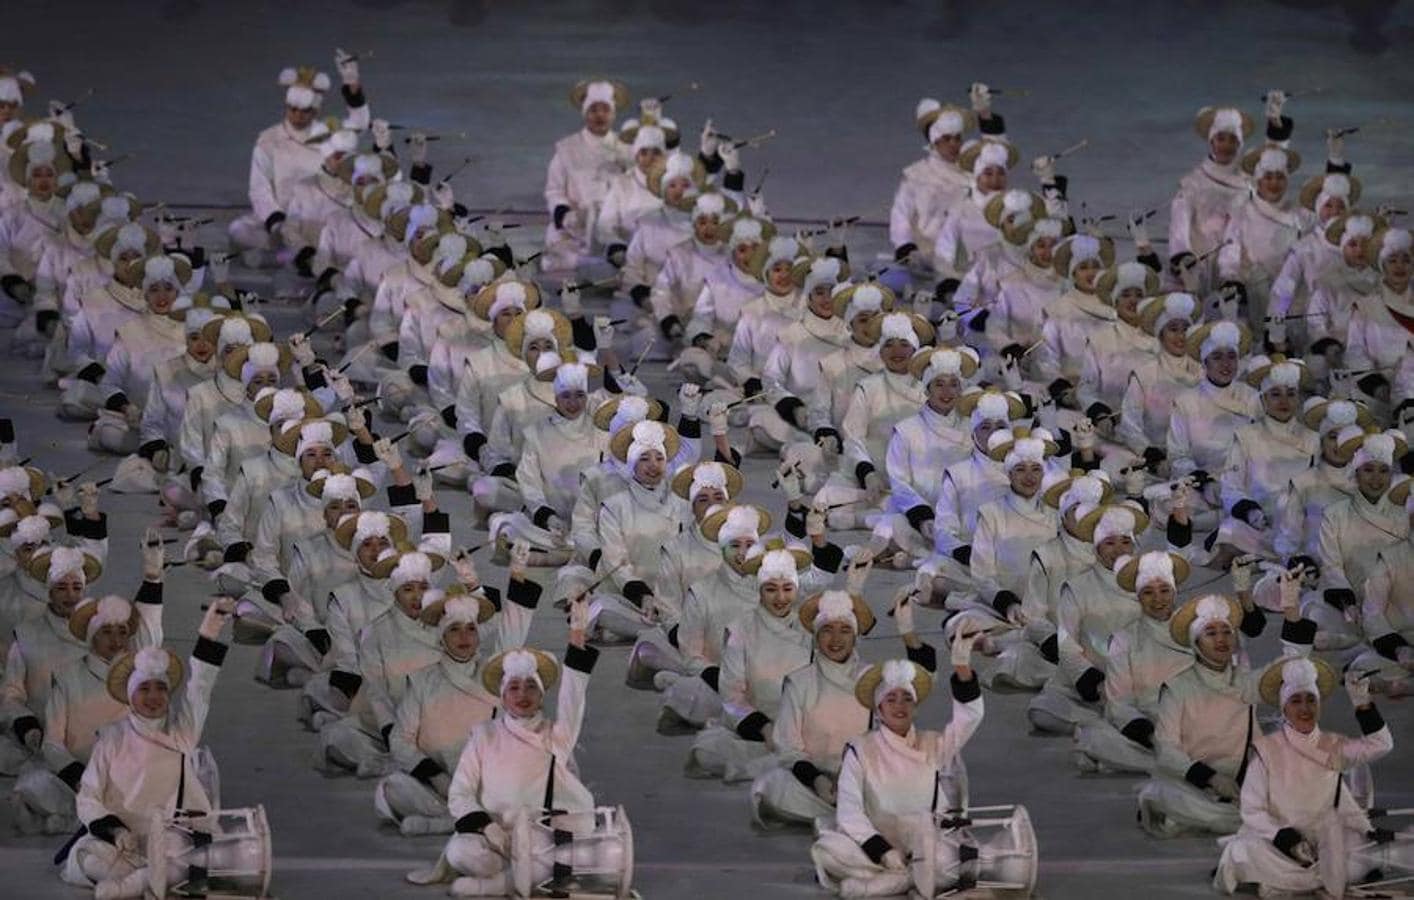 Una de las coreografías de esta inauguración de Juegos Olímpicos de Invierno celebrados en Pyeongchang. 